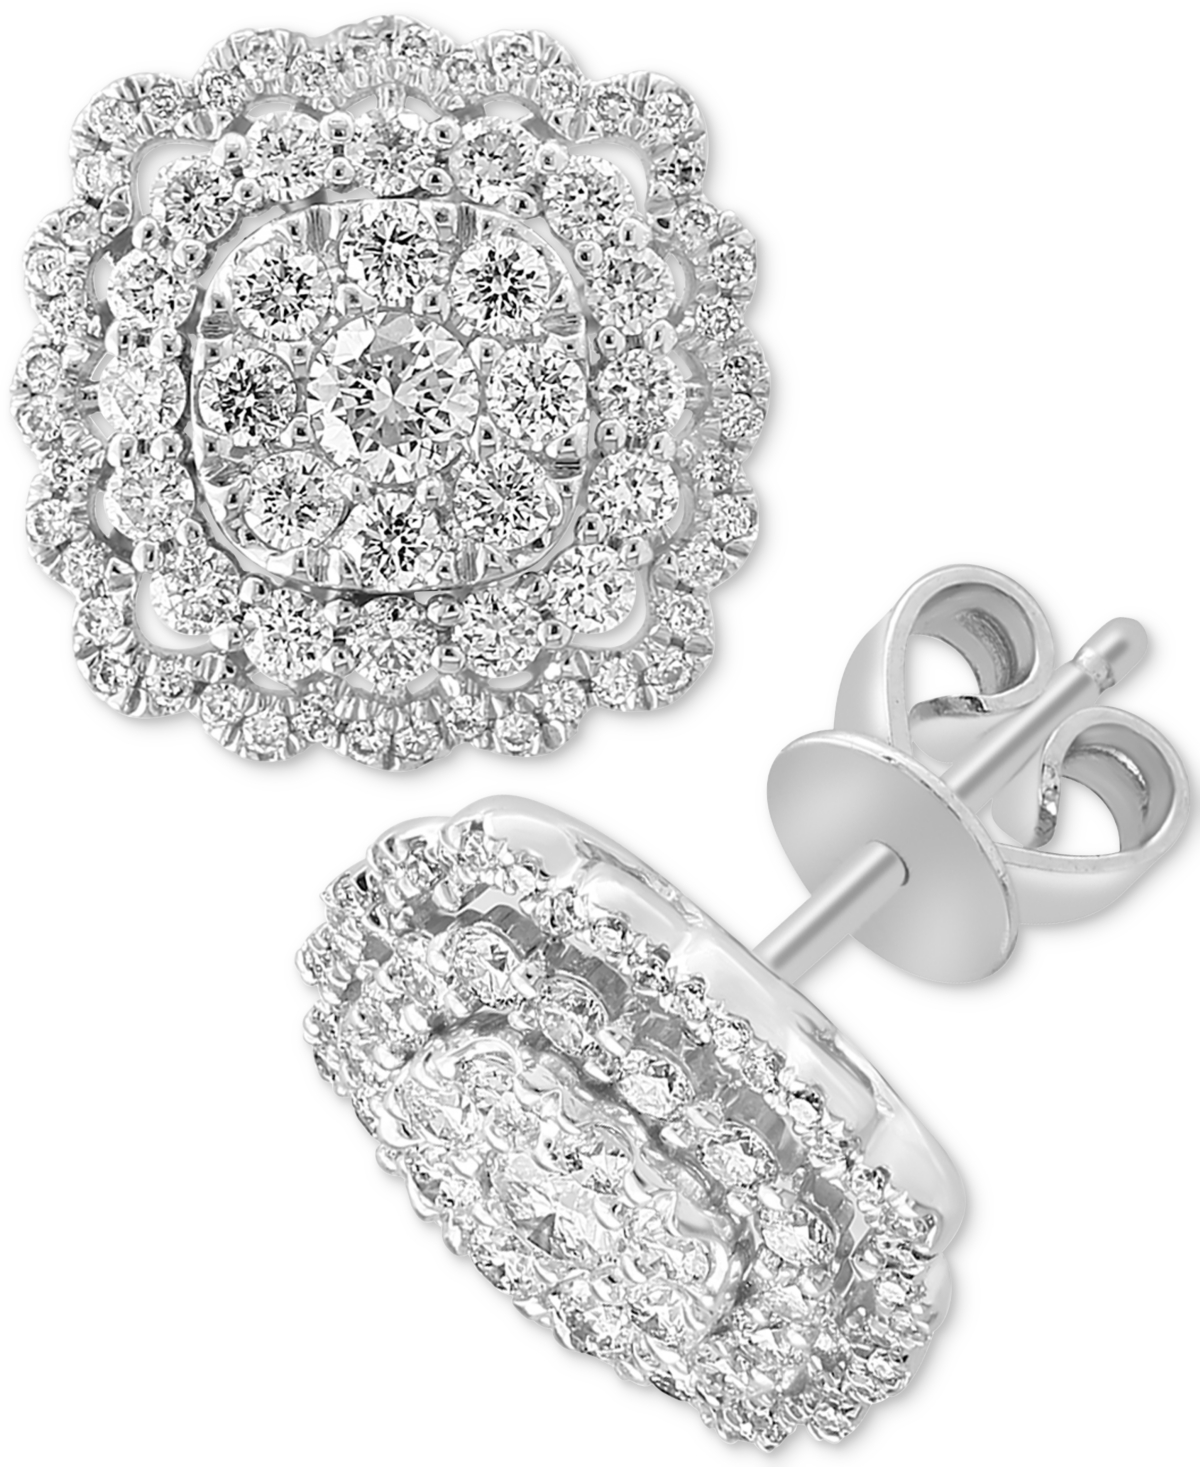 Effy Diamond Cluster Stud Earrings (1-1/20 ct. t.w.) in 14k White Gold - White Gold